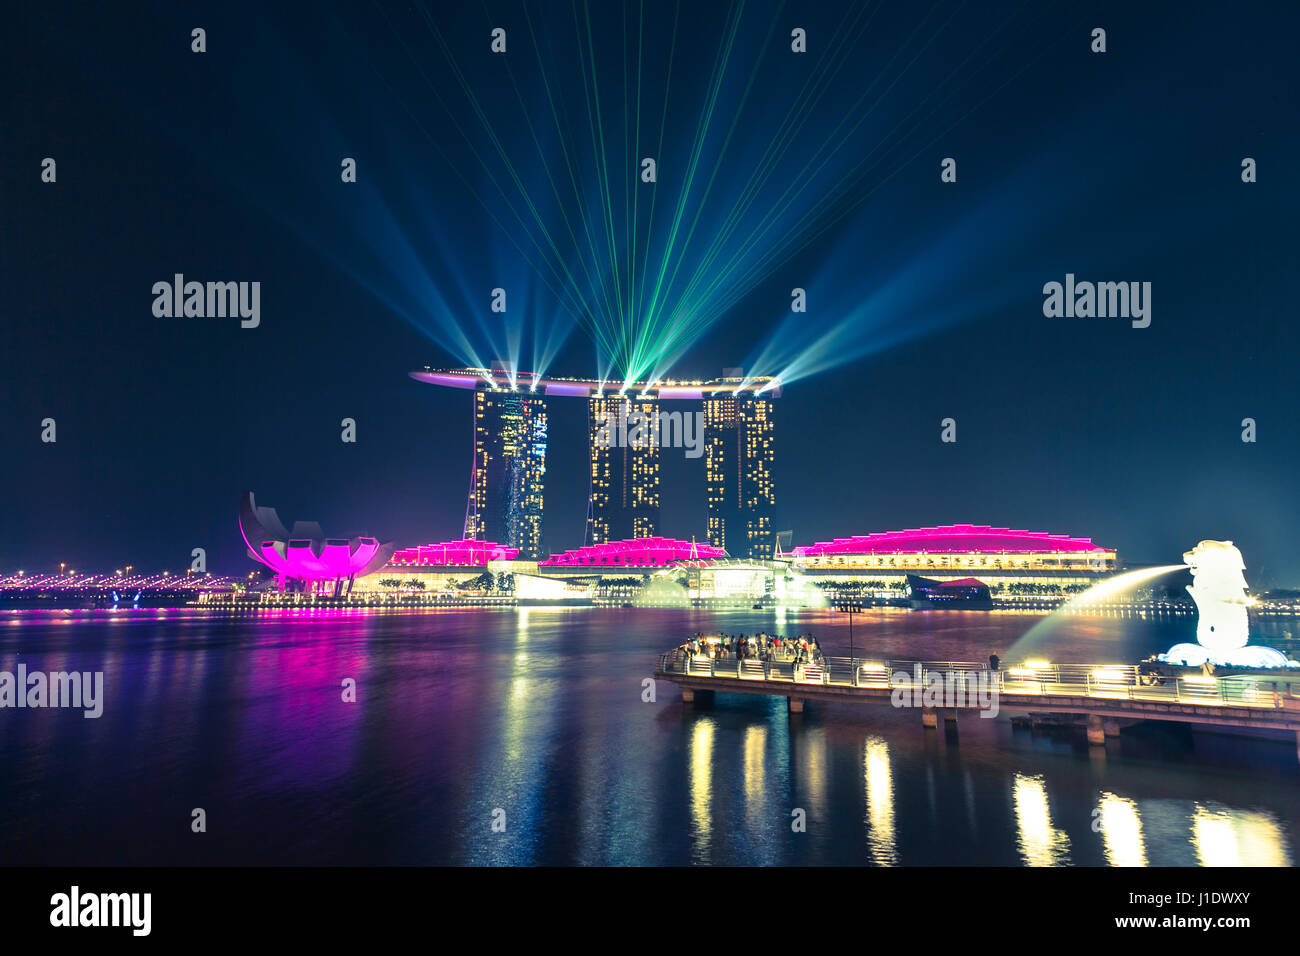 Des faisceaux de lumière briller du haut de la Marina Bay Sands Hotel sur le lac à Singapour, en Asie du sud-est Banque D'Images